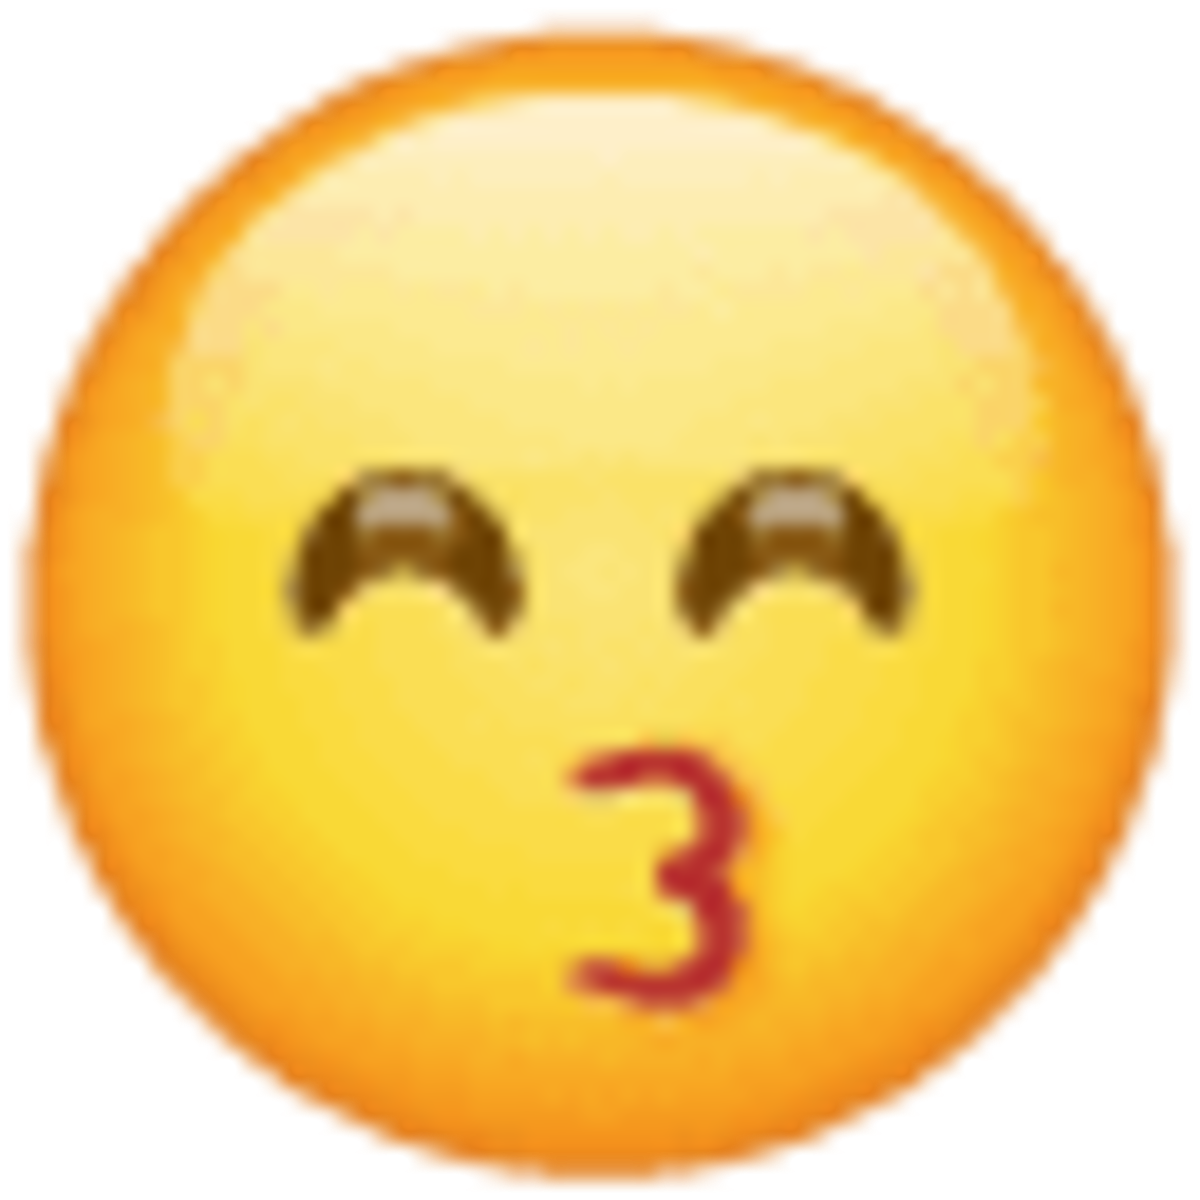 Emoji 1f619, cara besando con ojos sonrientes